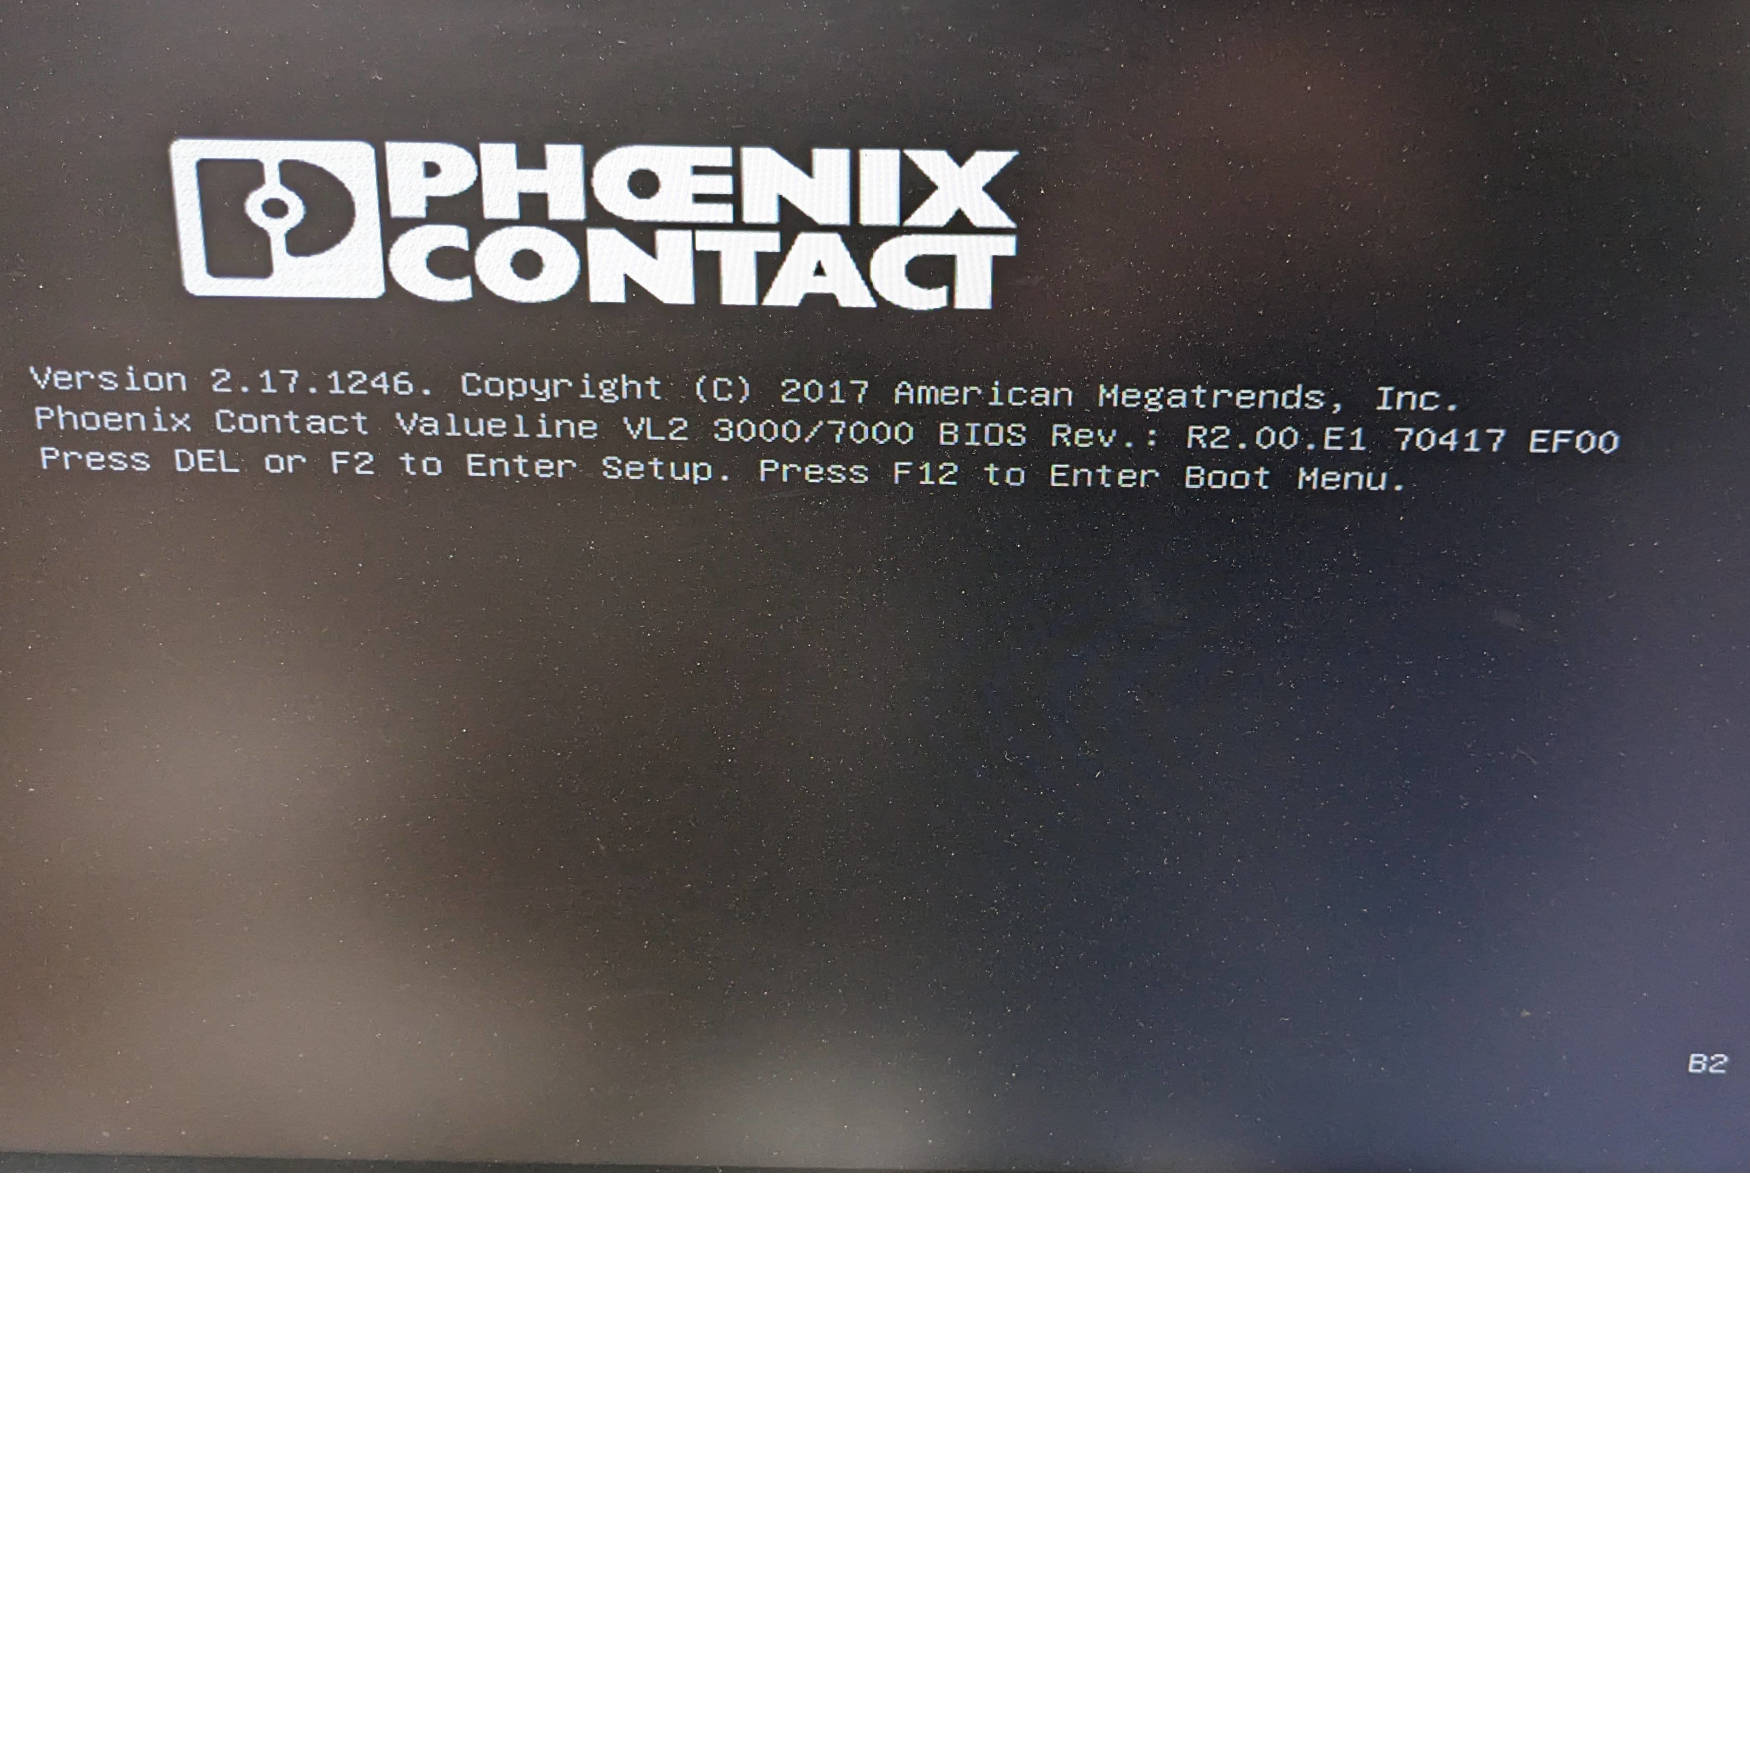 2400333 Phoenix Contact VL2 BPX 7000 Box PC, 150GB Intel SSD, 8GB, i5-4300U 6